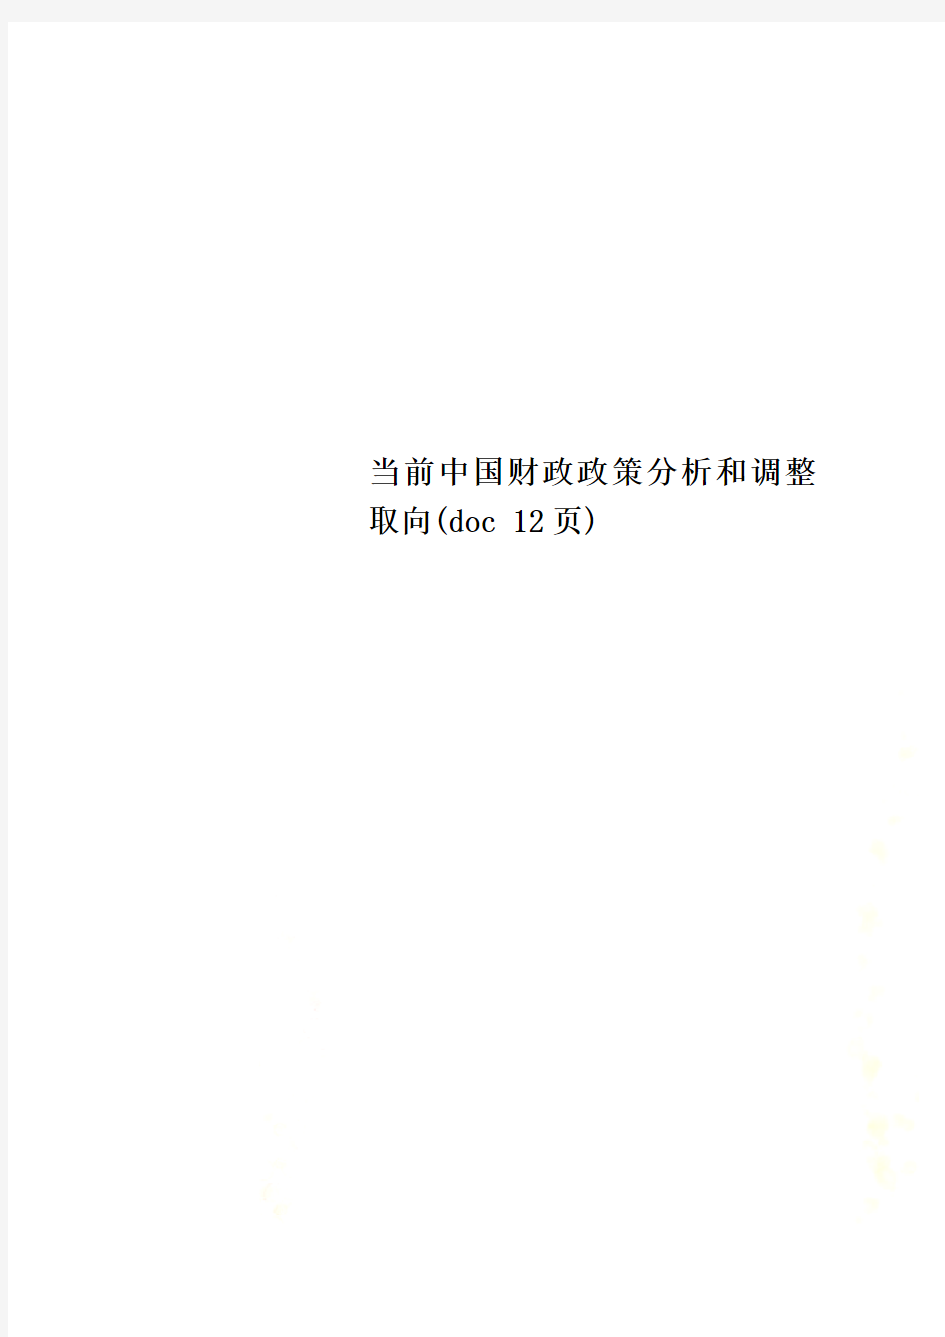 当前中国财政政策分析和调整取向(doc 12页)